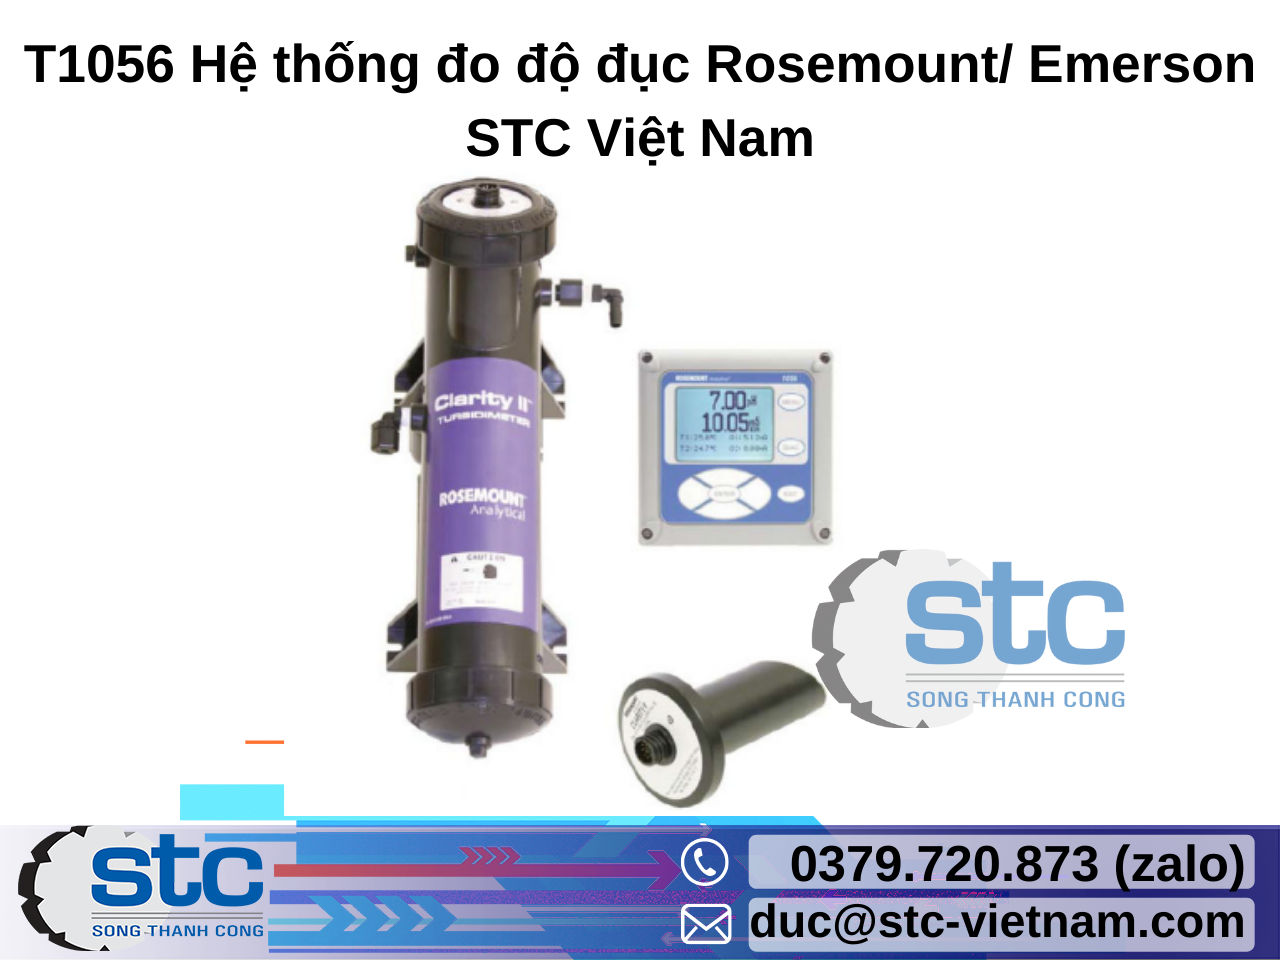 t1056-he-thong-do-do-duc-rosemount-emerson.png